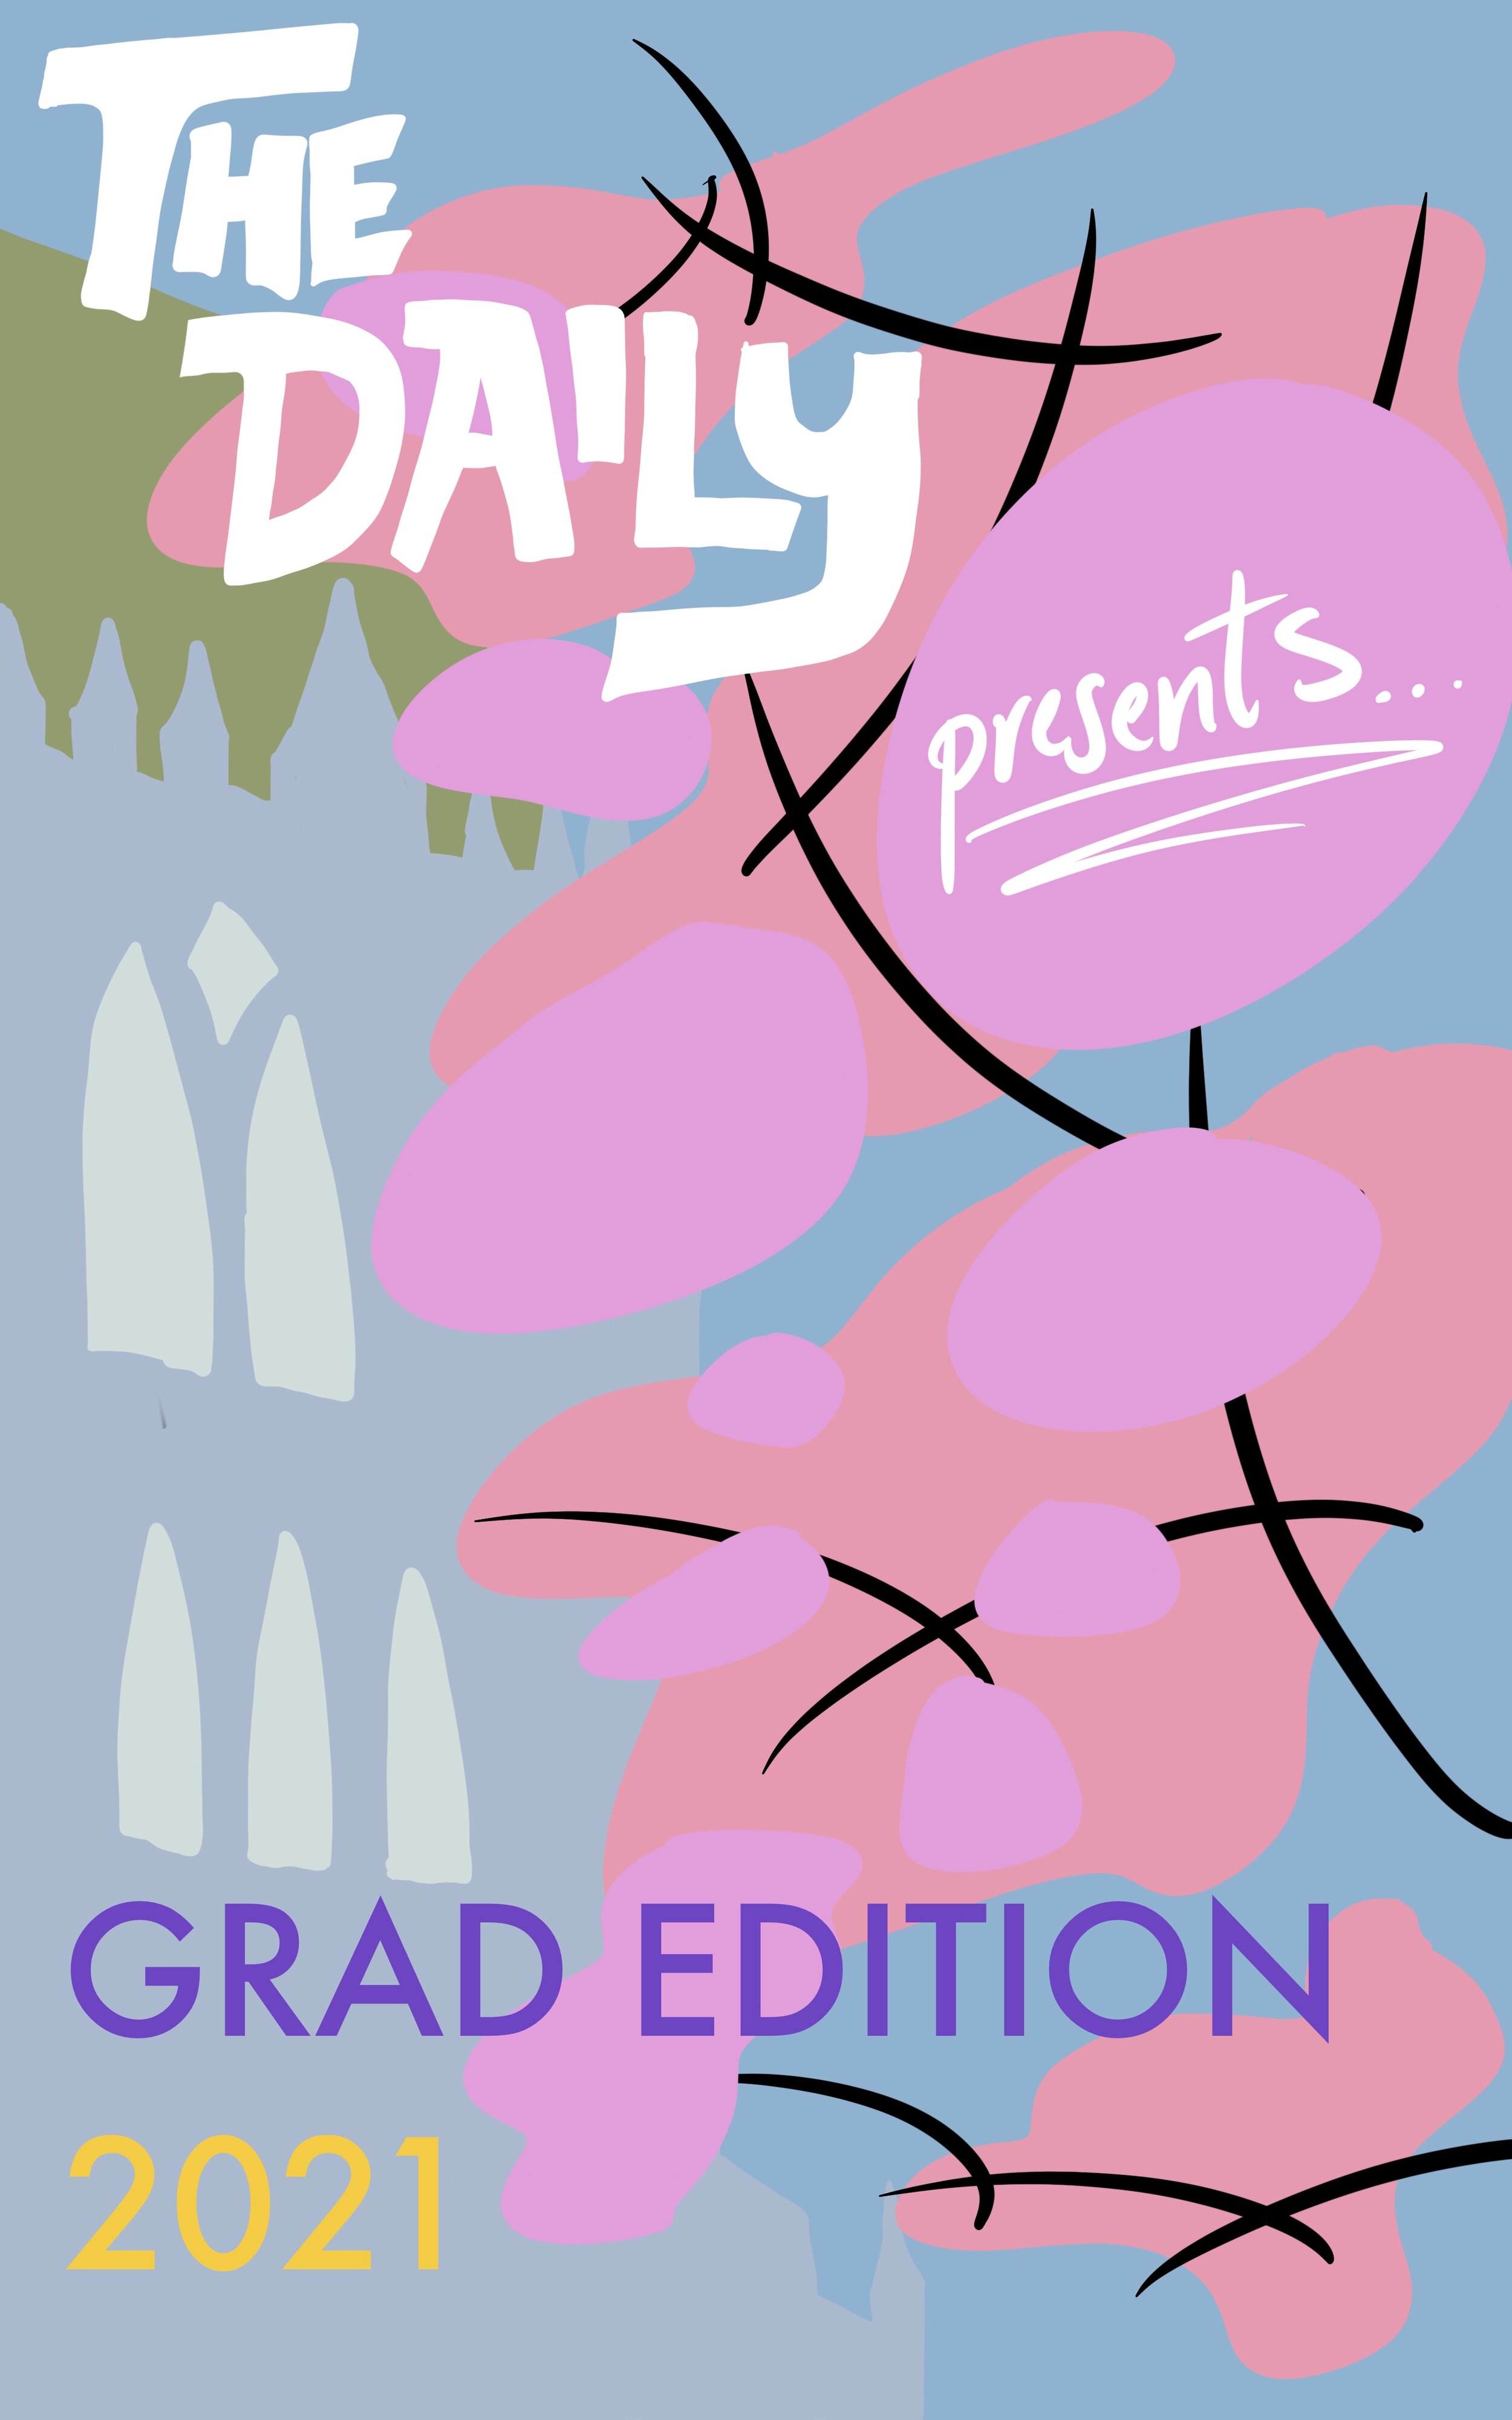 Grad Edition 2021 Cover Art